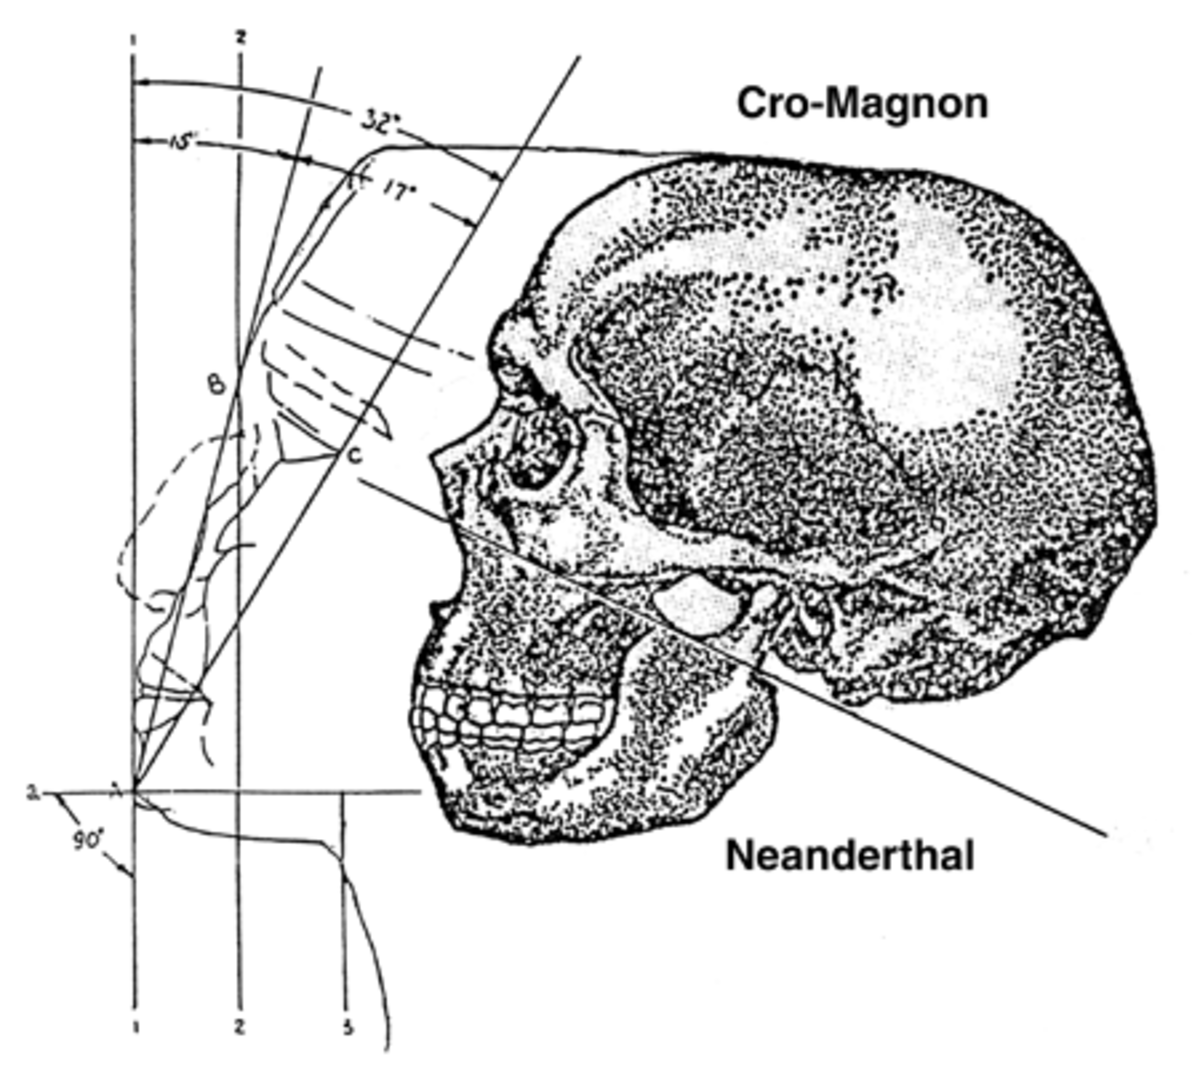 Were Neanderthals Smarter Than Us?